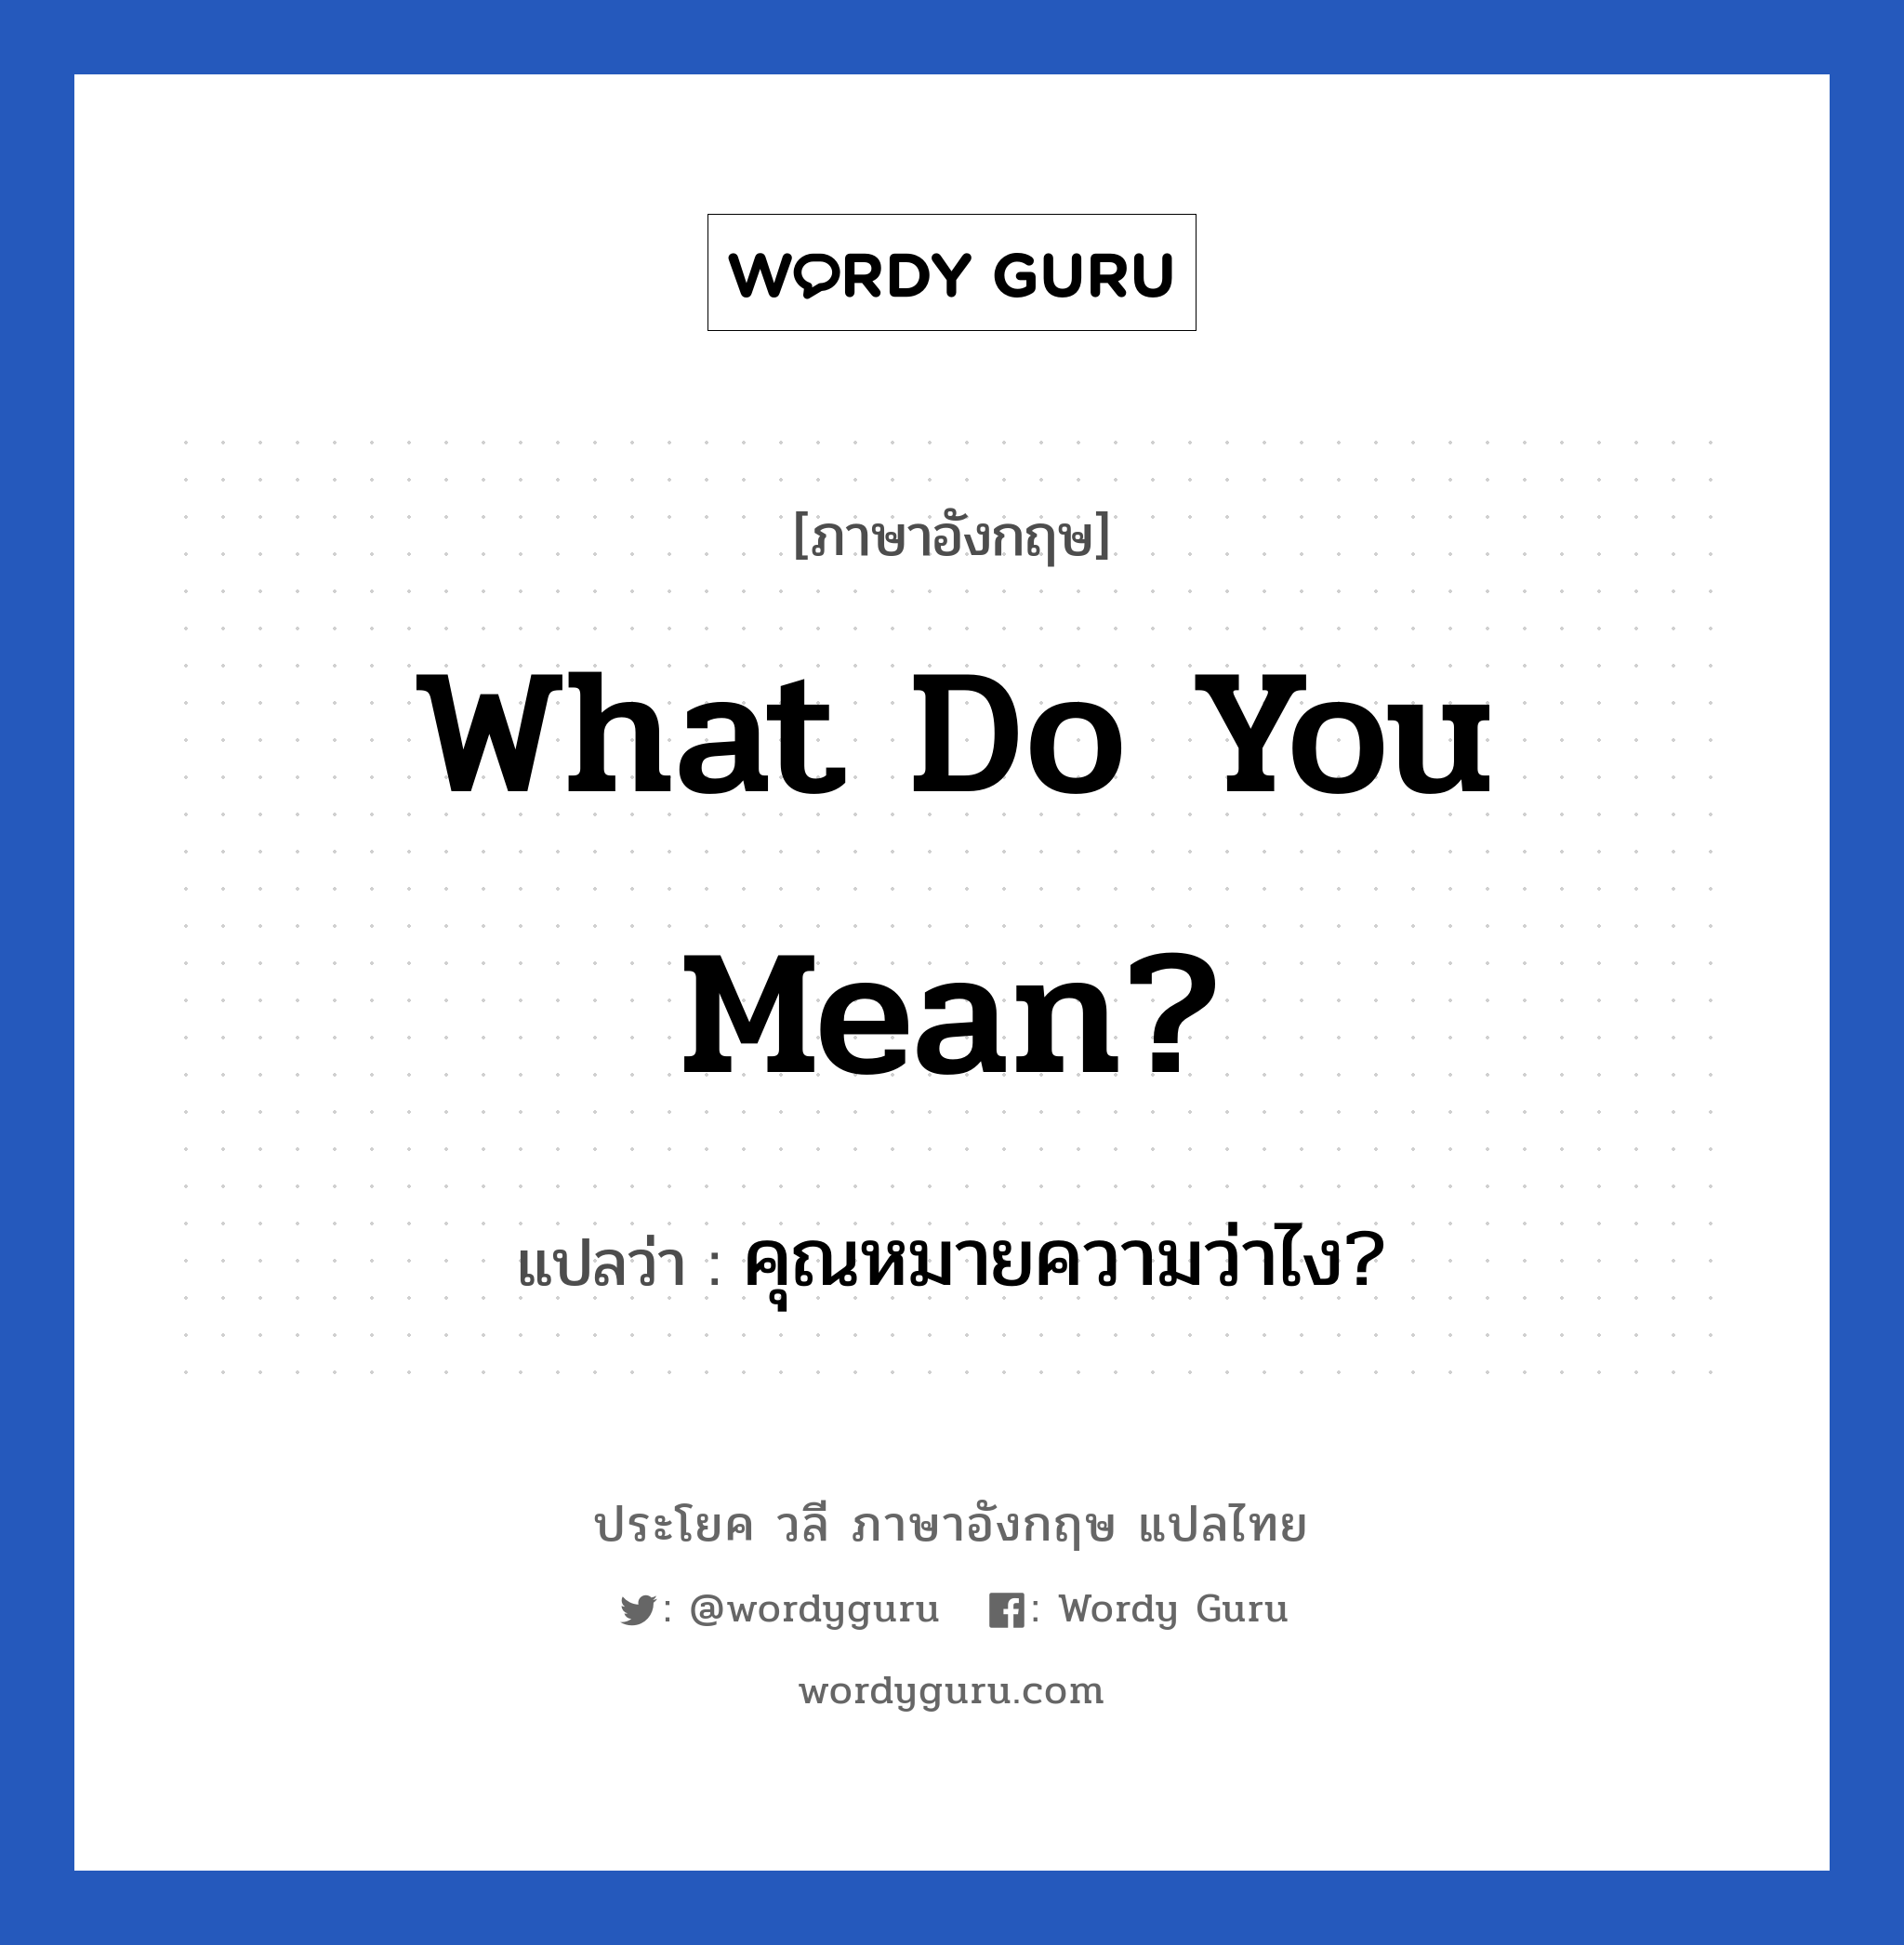 คุณหมายความว่าไง? ภาษาอังกฤษ?, วลีภาษาอังกฤษ คุณหมายความว่าไง? แปลว่า What do you mean?